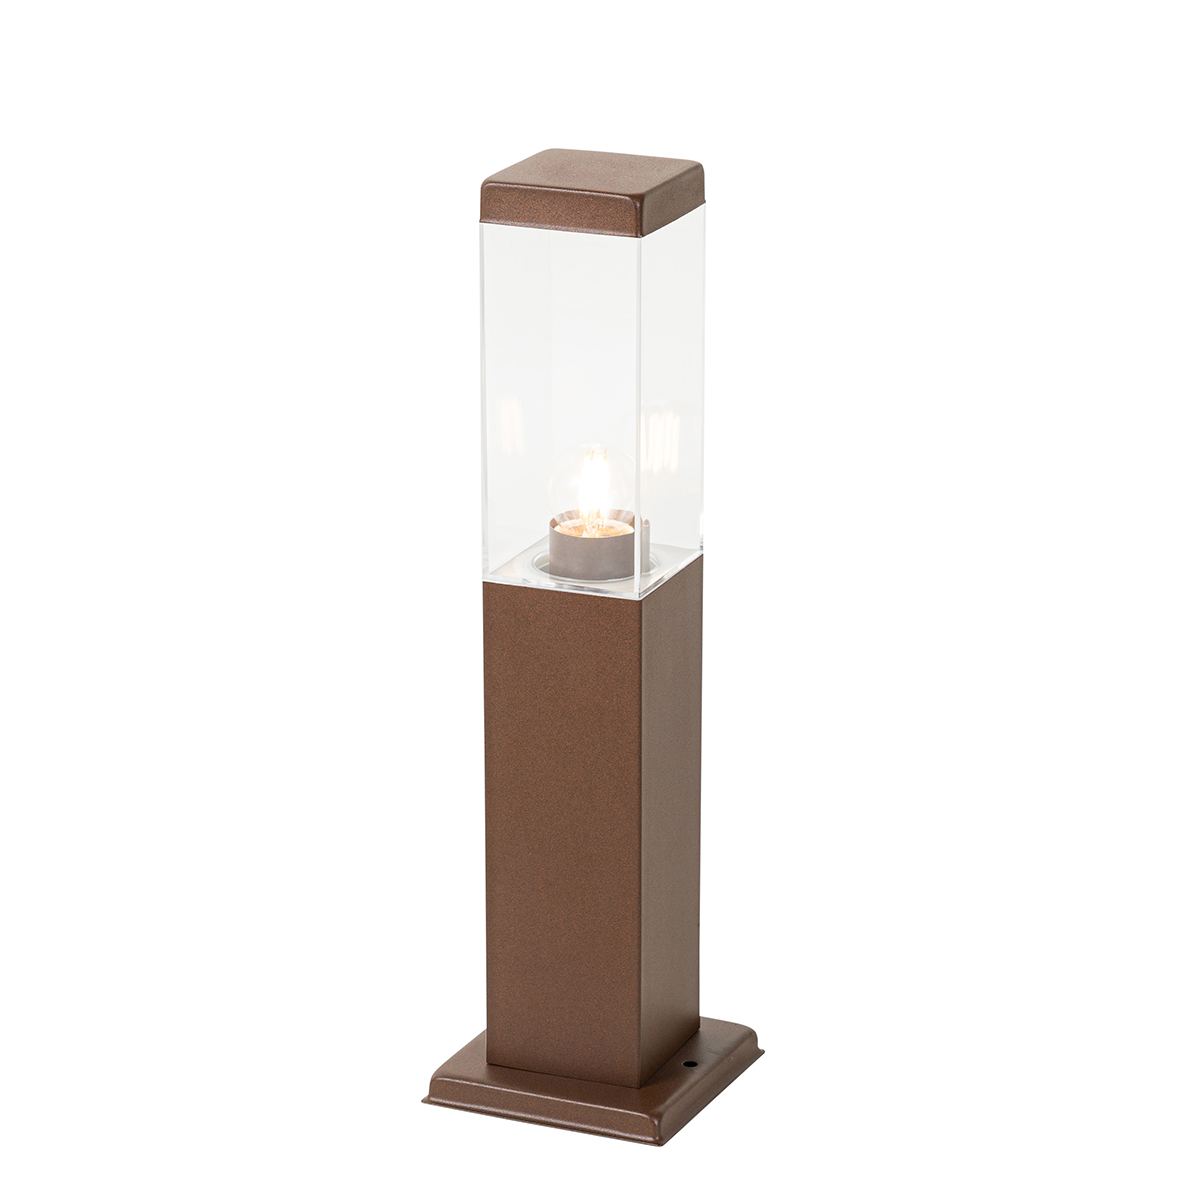 Modern kültéri lámpaoszlop rozsdabarna 45 cm - Malios